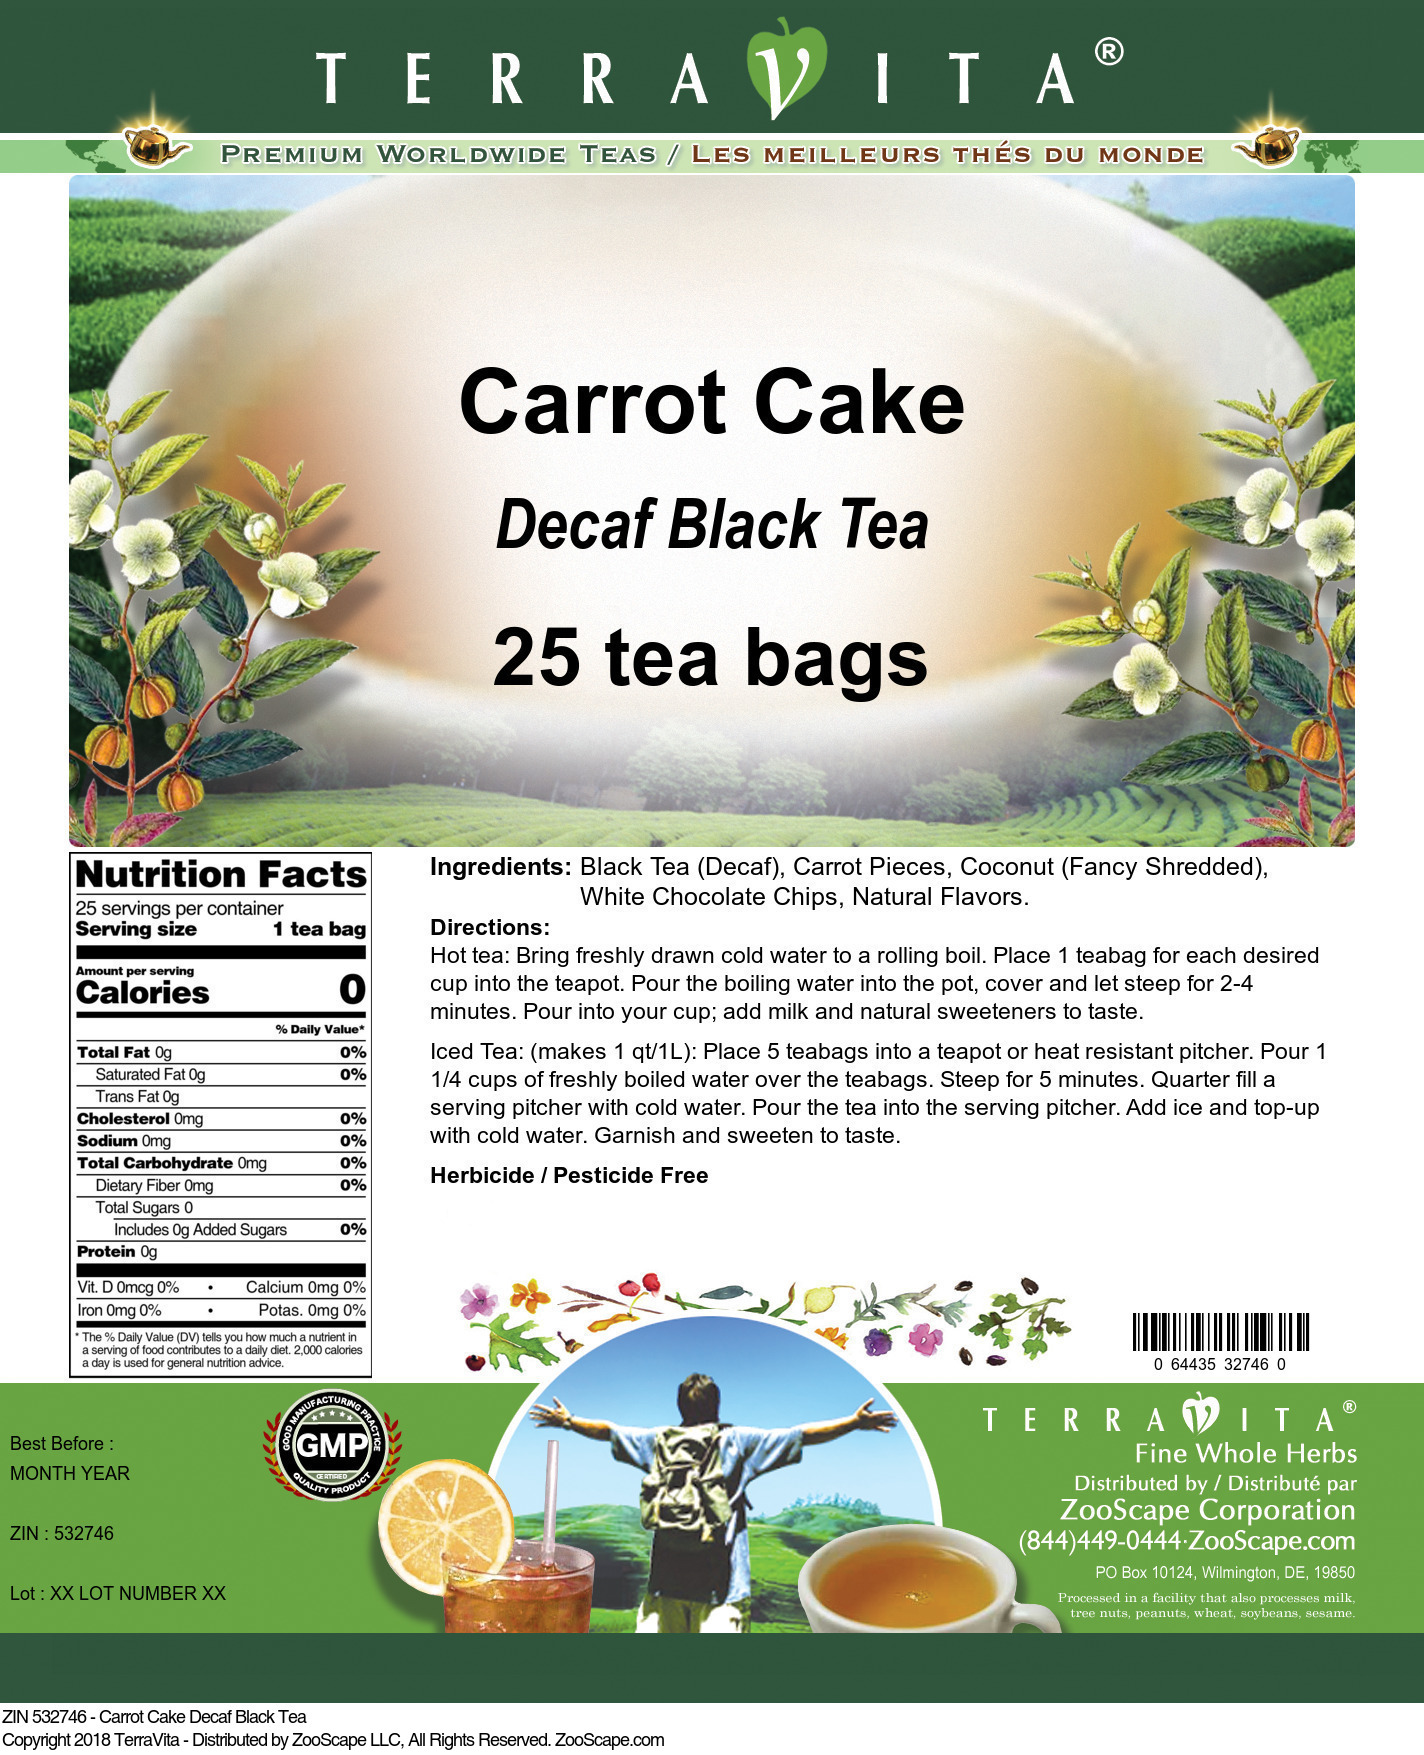 Carrot Cake Decaf Black Tea - Label